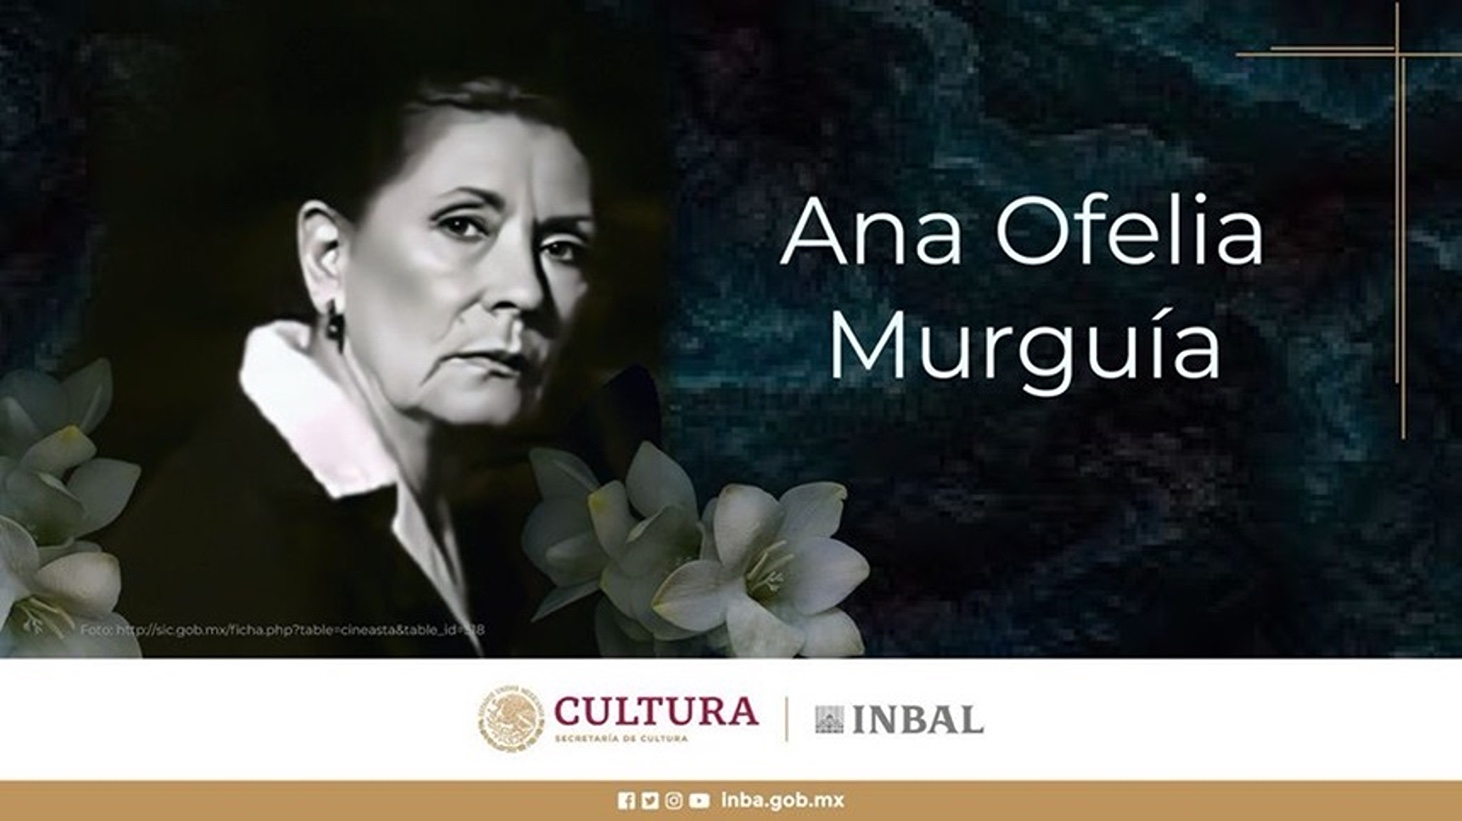 Ana Ofelia Murguía, celebra actriță mexicană, a murit la 90 de ani